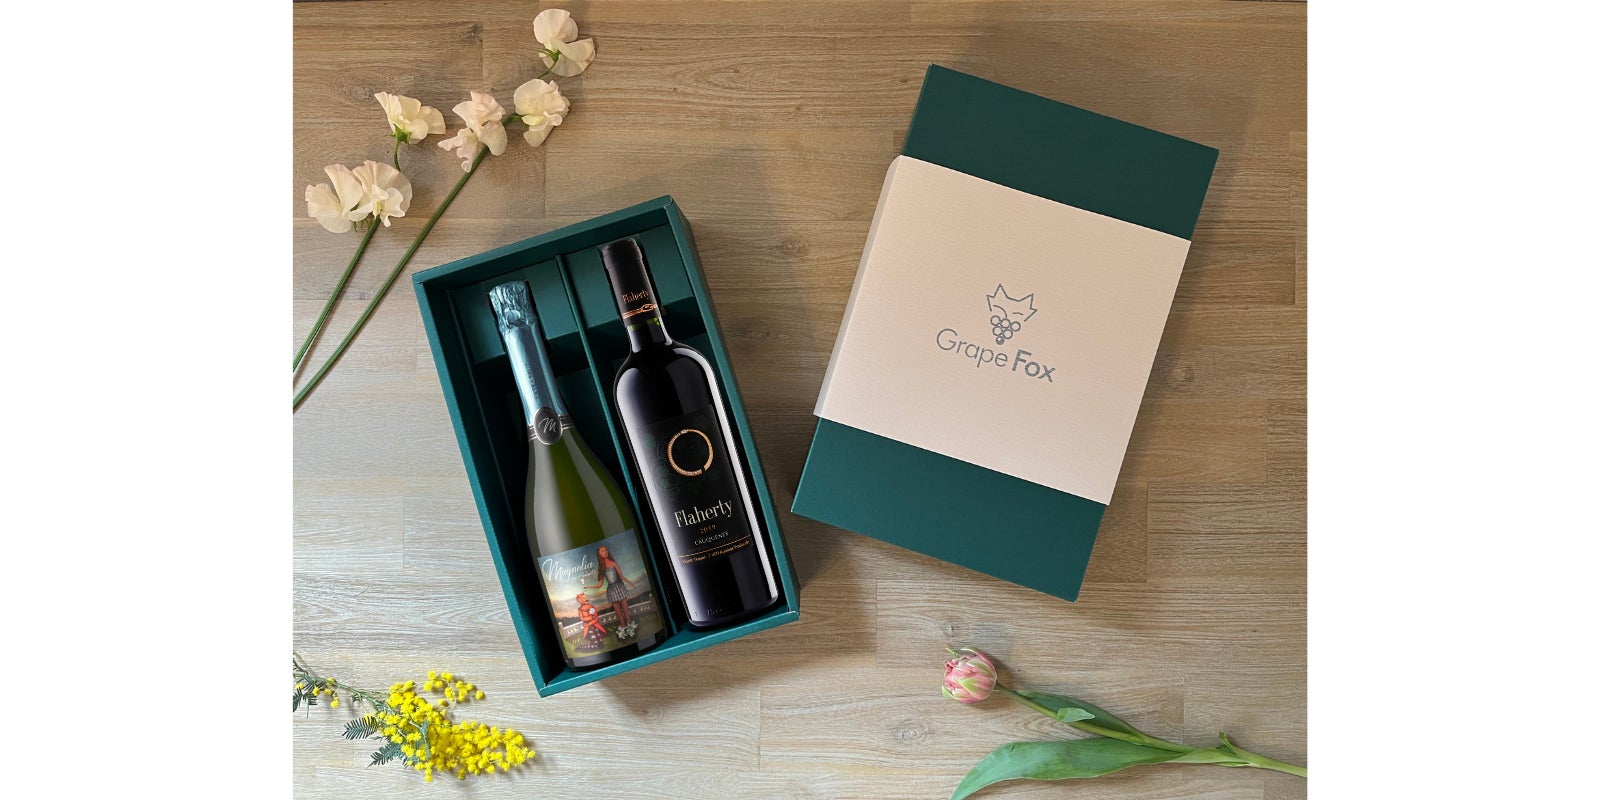 生産数10,000本以下の少量生産ワインを販売するGrapeFox、ブドウの楽園チリから忘れられたブドウ『パイス』のブレンドワインを日本初輸入、「Makuake」にて先行・限定販売プロジェクトを開始のサブ画像6